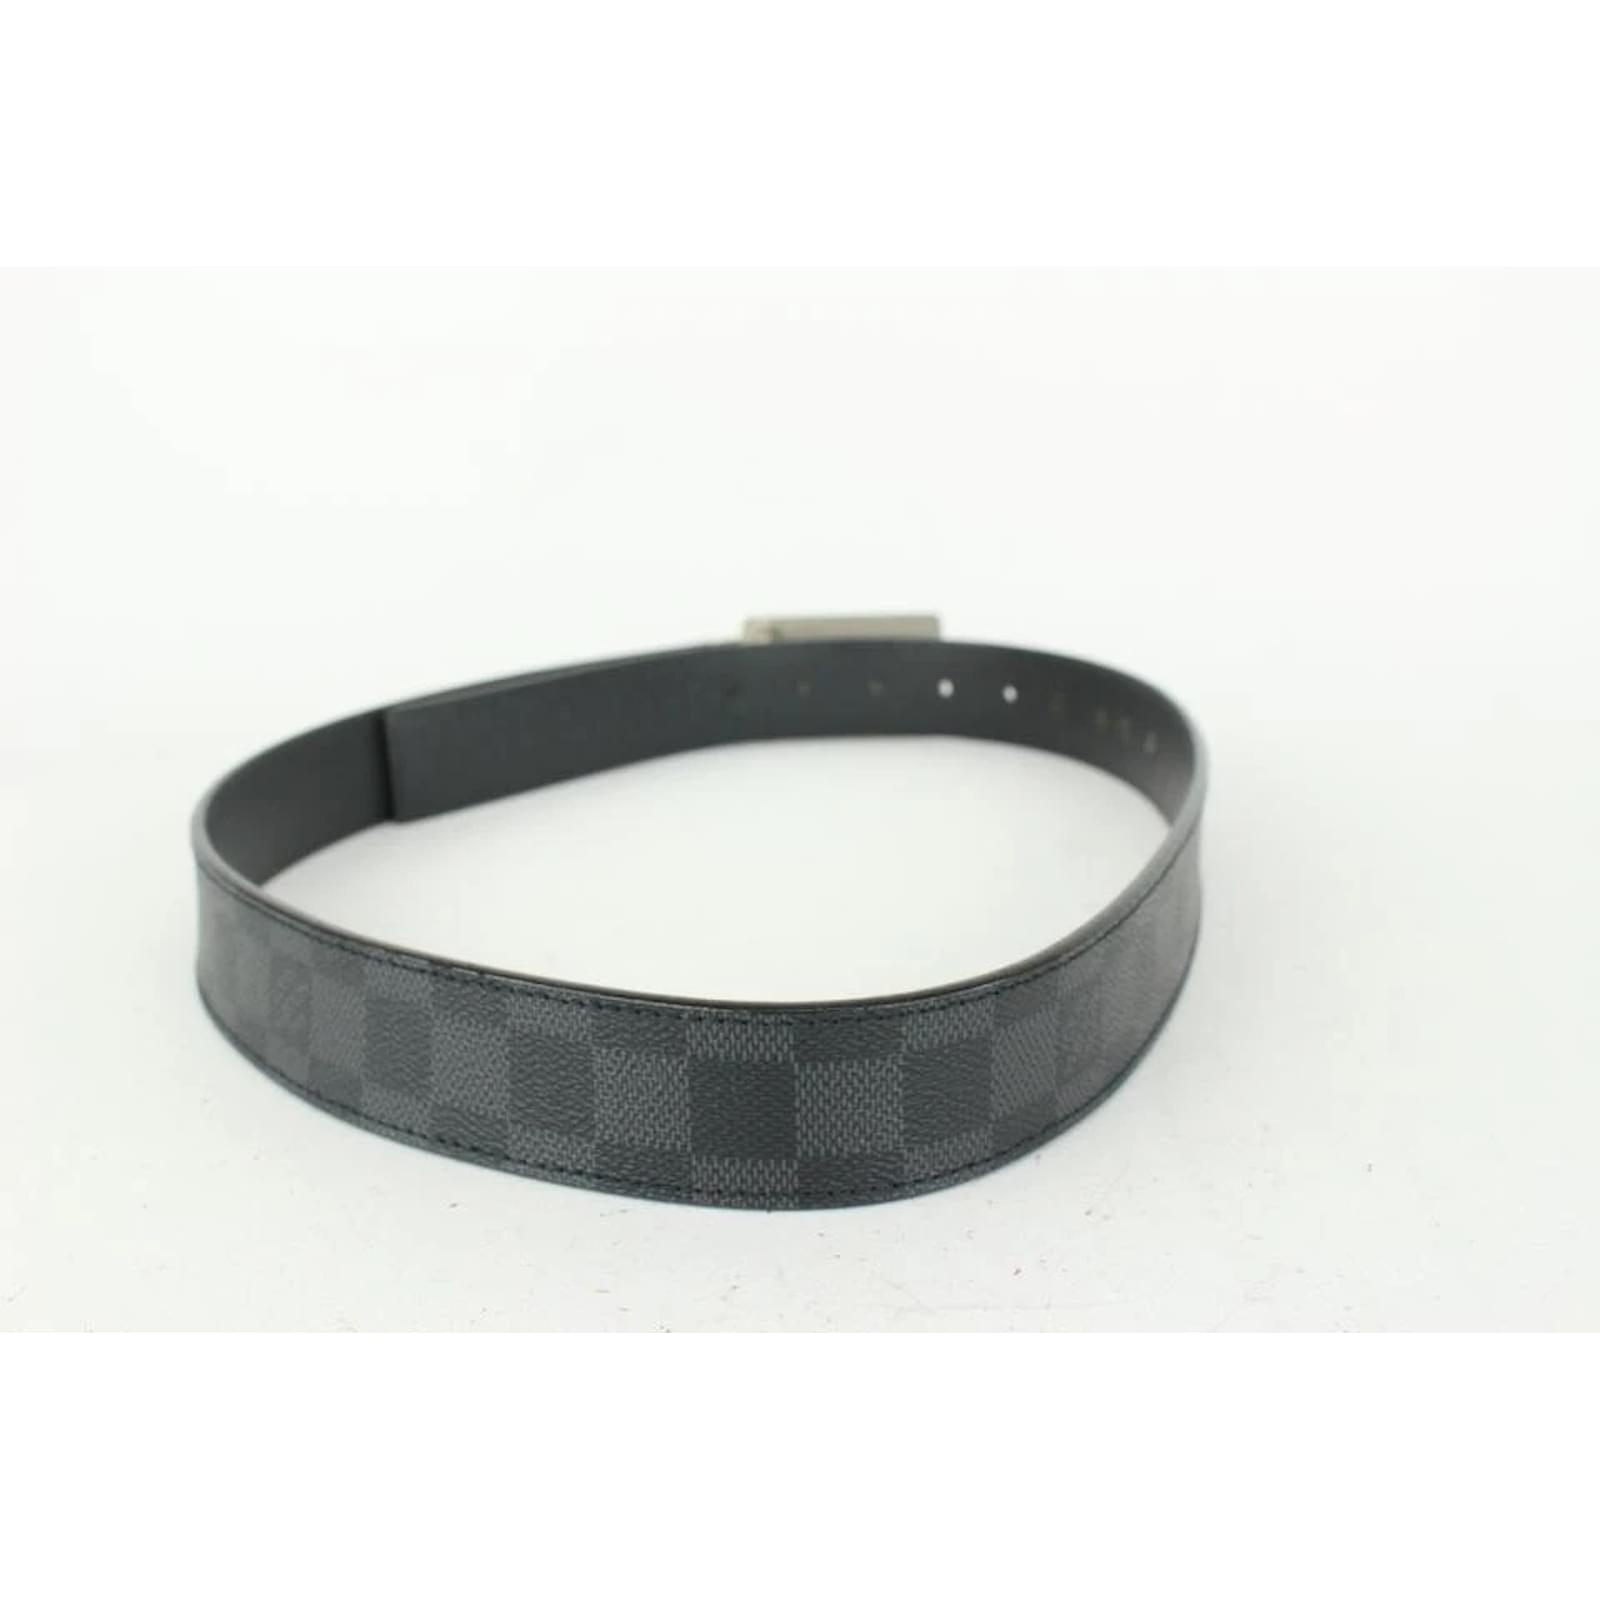 Louis Vuitton Inventeur Damier Graphite Reversible Belt - Black